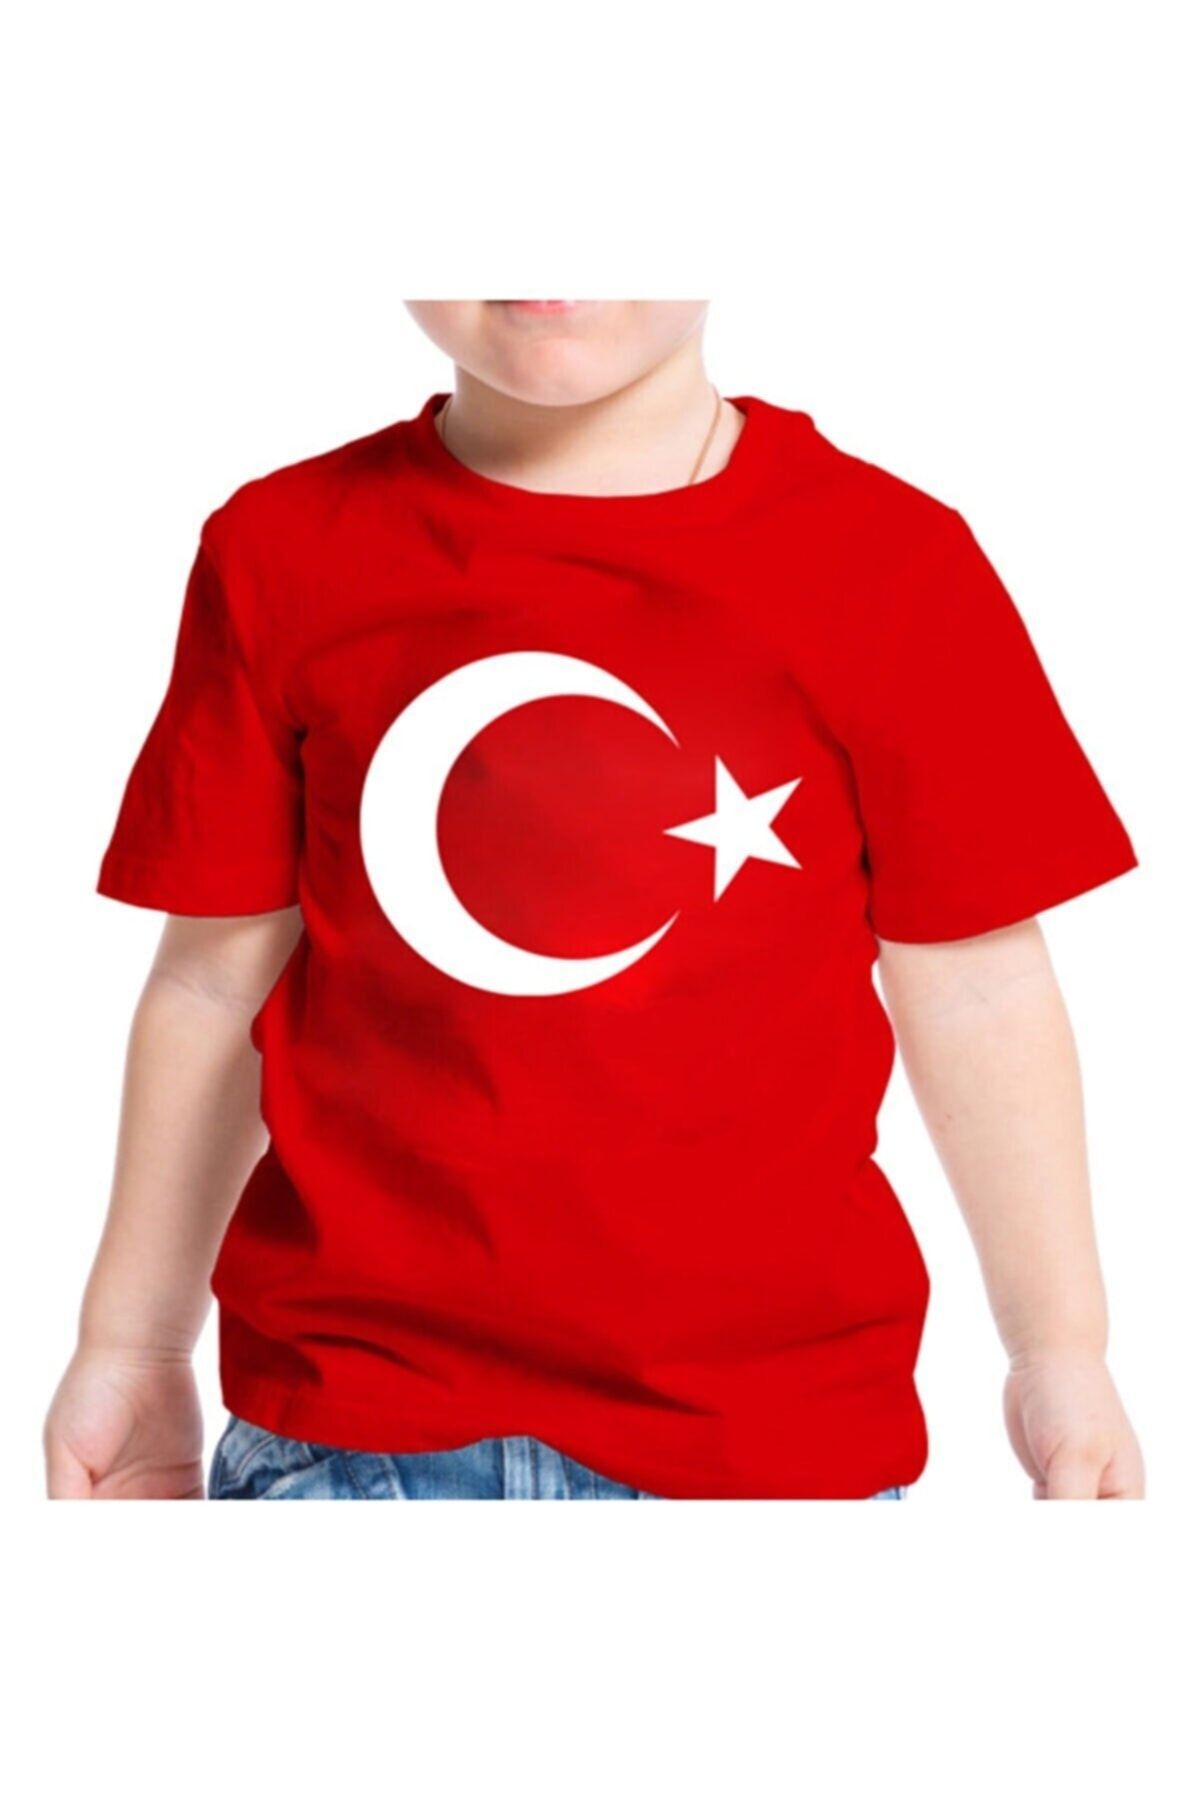 ADA BEBEK ÇOCUK Kırmızı Türk Bayraklı Ay Yıldız Desenli Kız Erkek Tişört